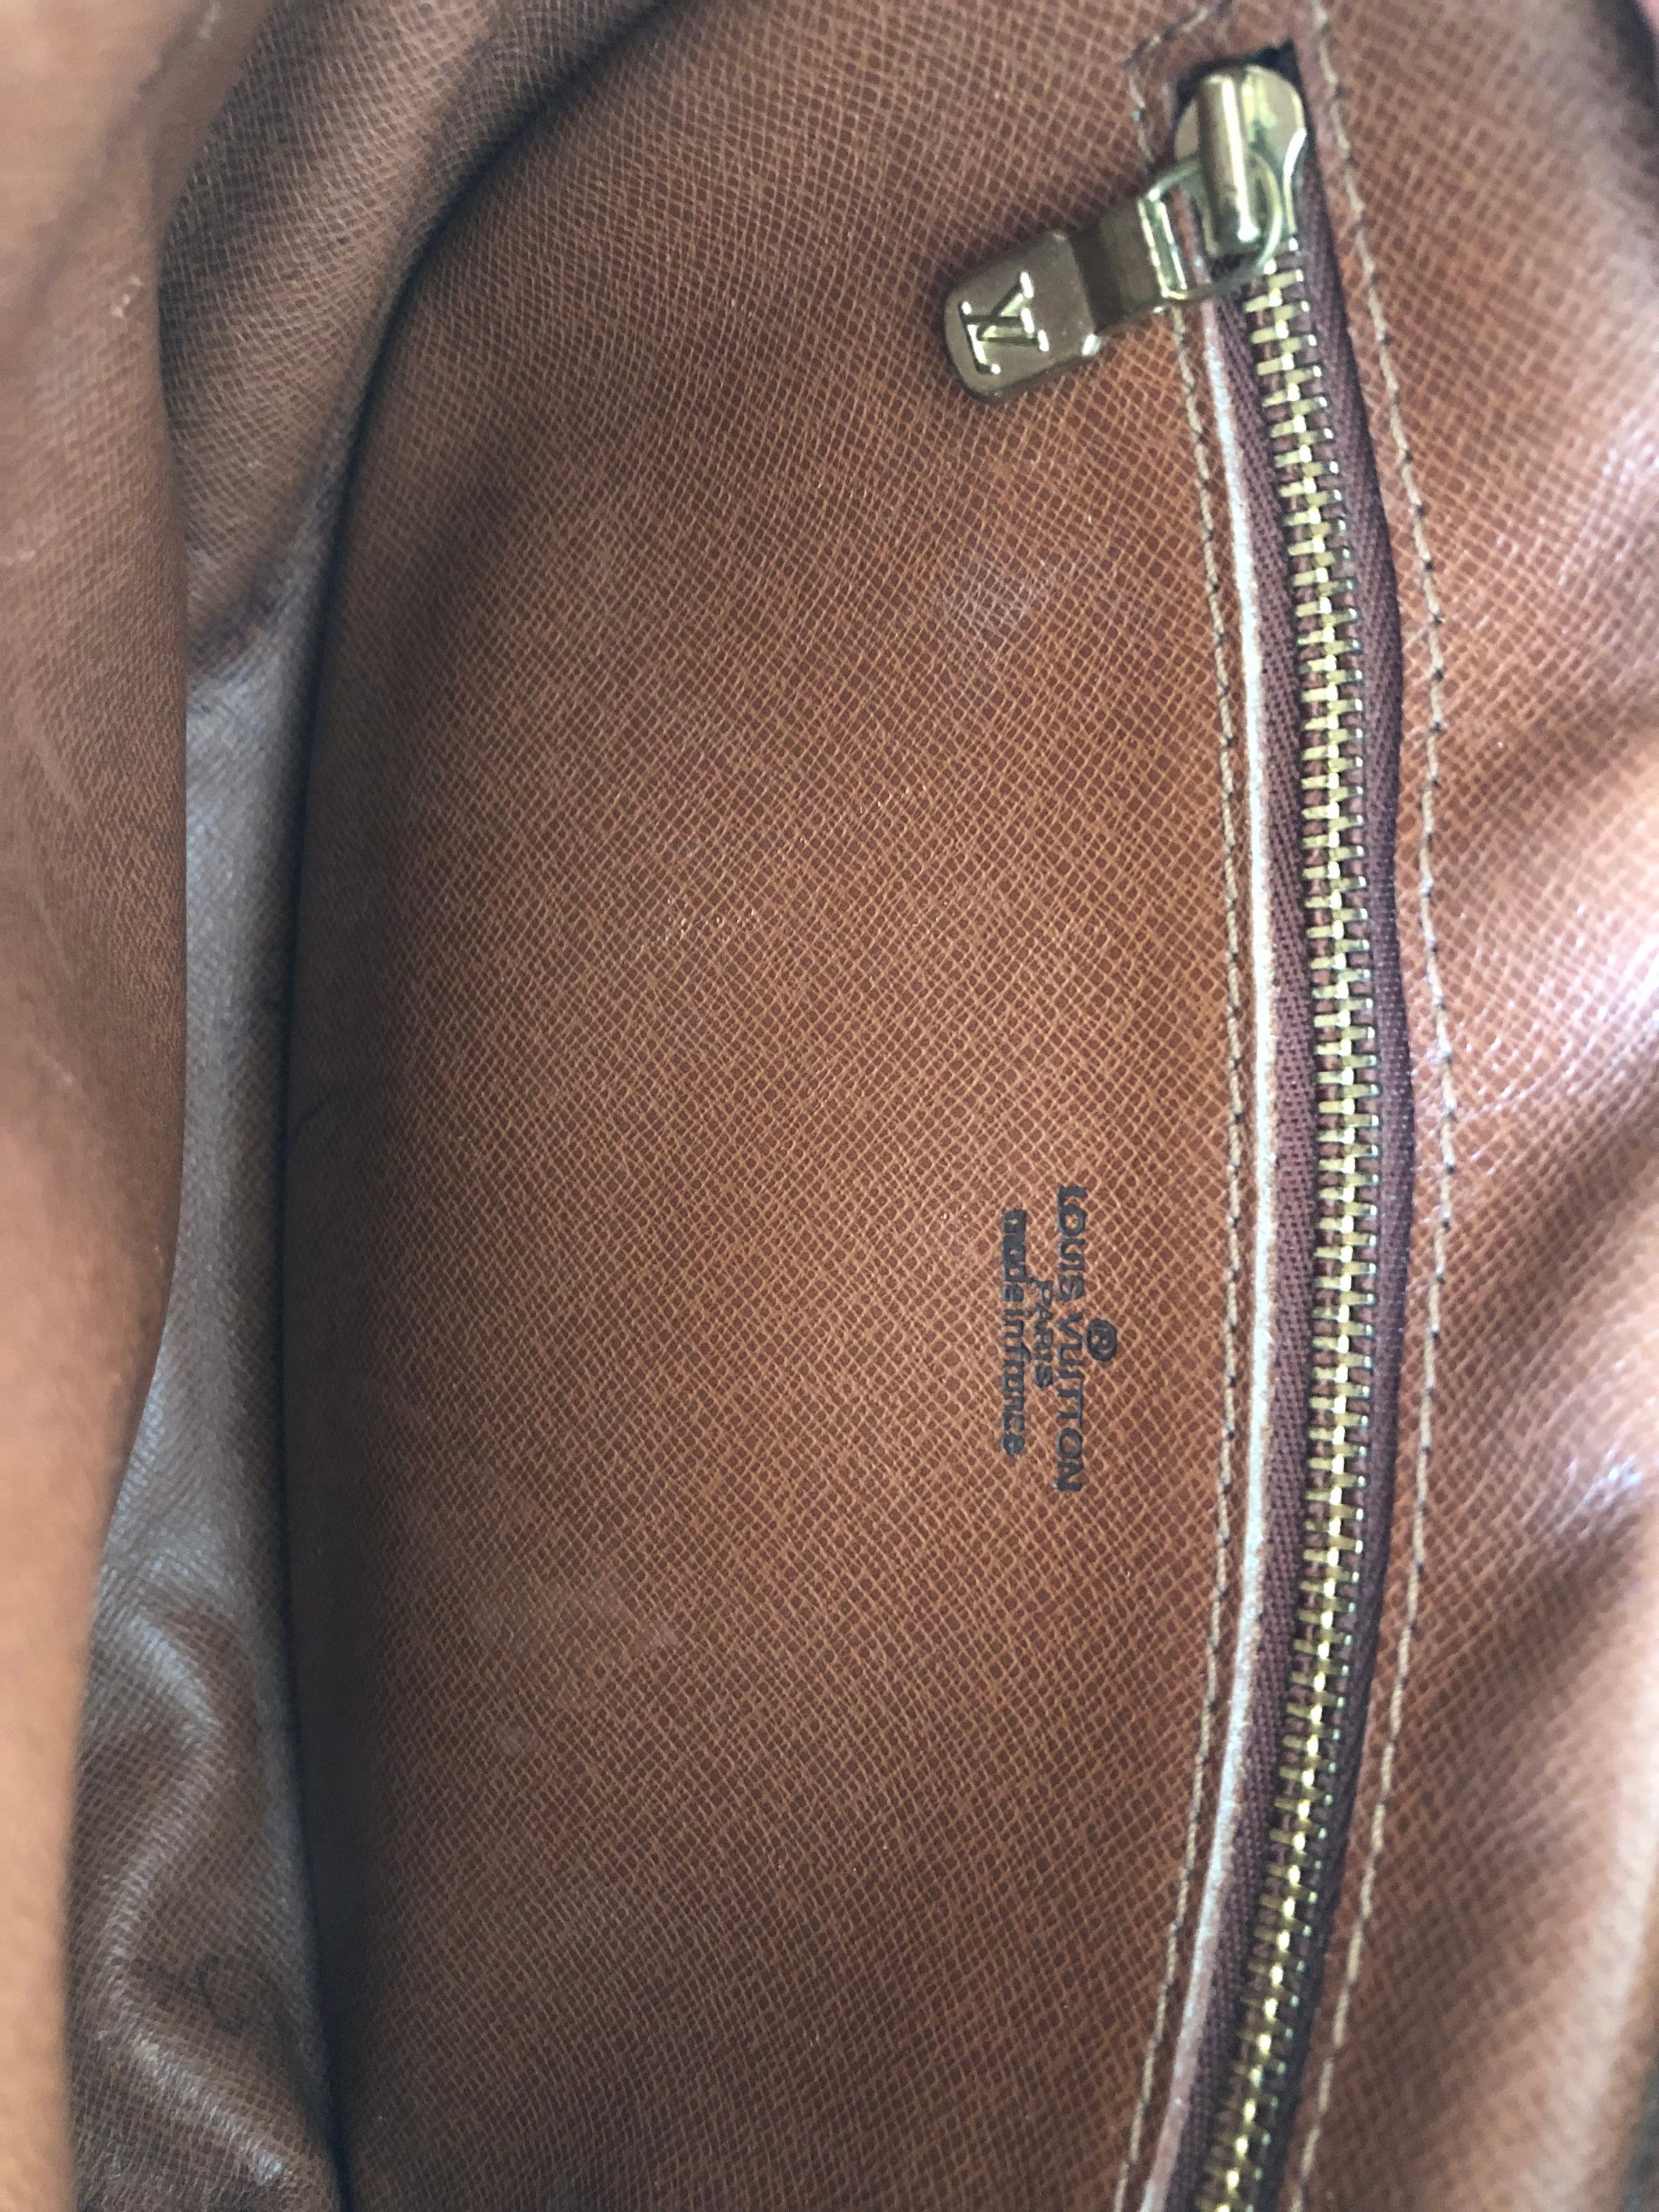 Vintage Louis Vuitton Jeune Fille PM Bag for sale at auction on 30th June